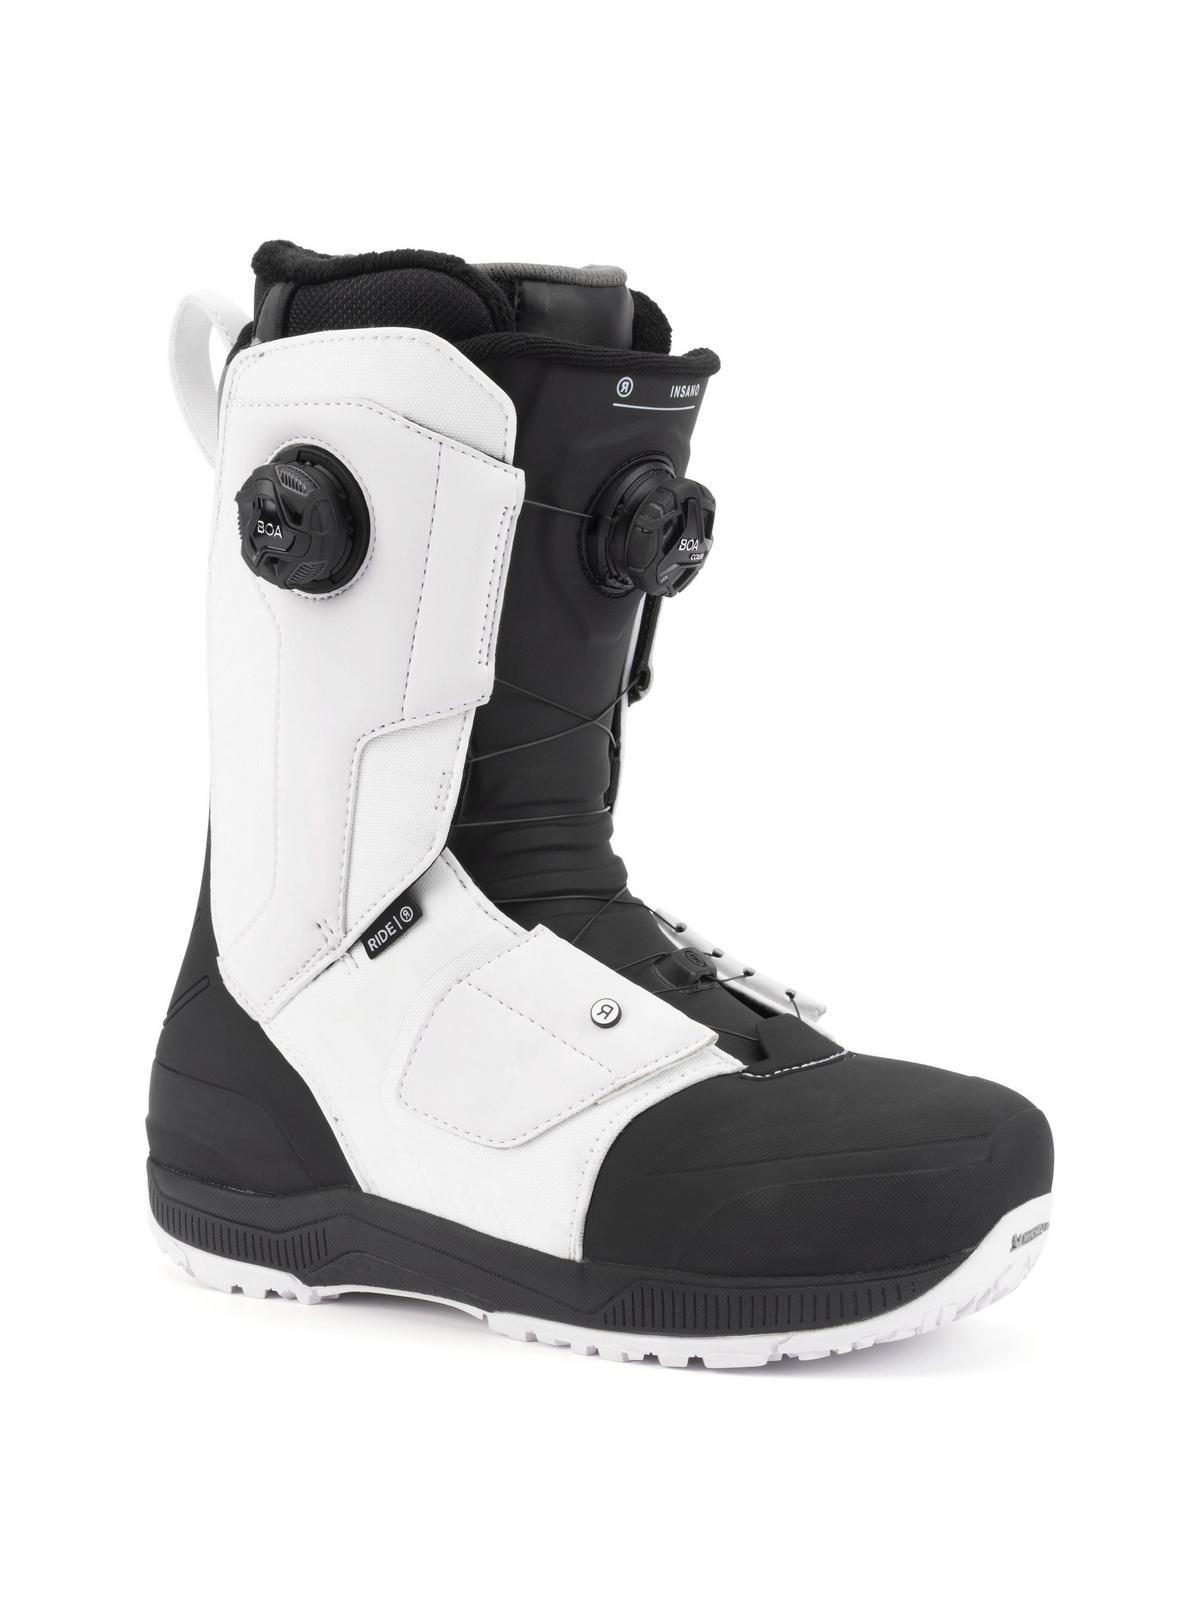 RIDE Insano Snowboard Boots 2022 | RIDE Snowboards